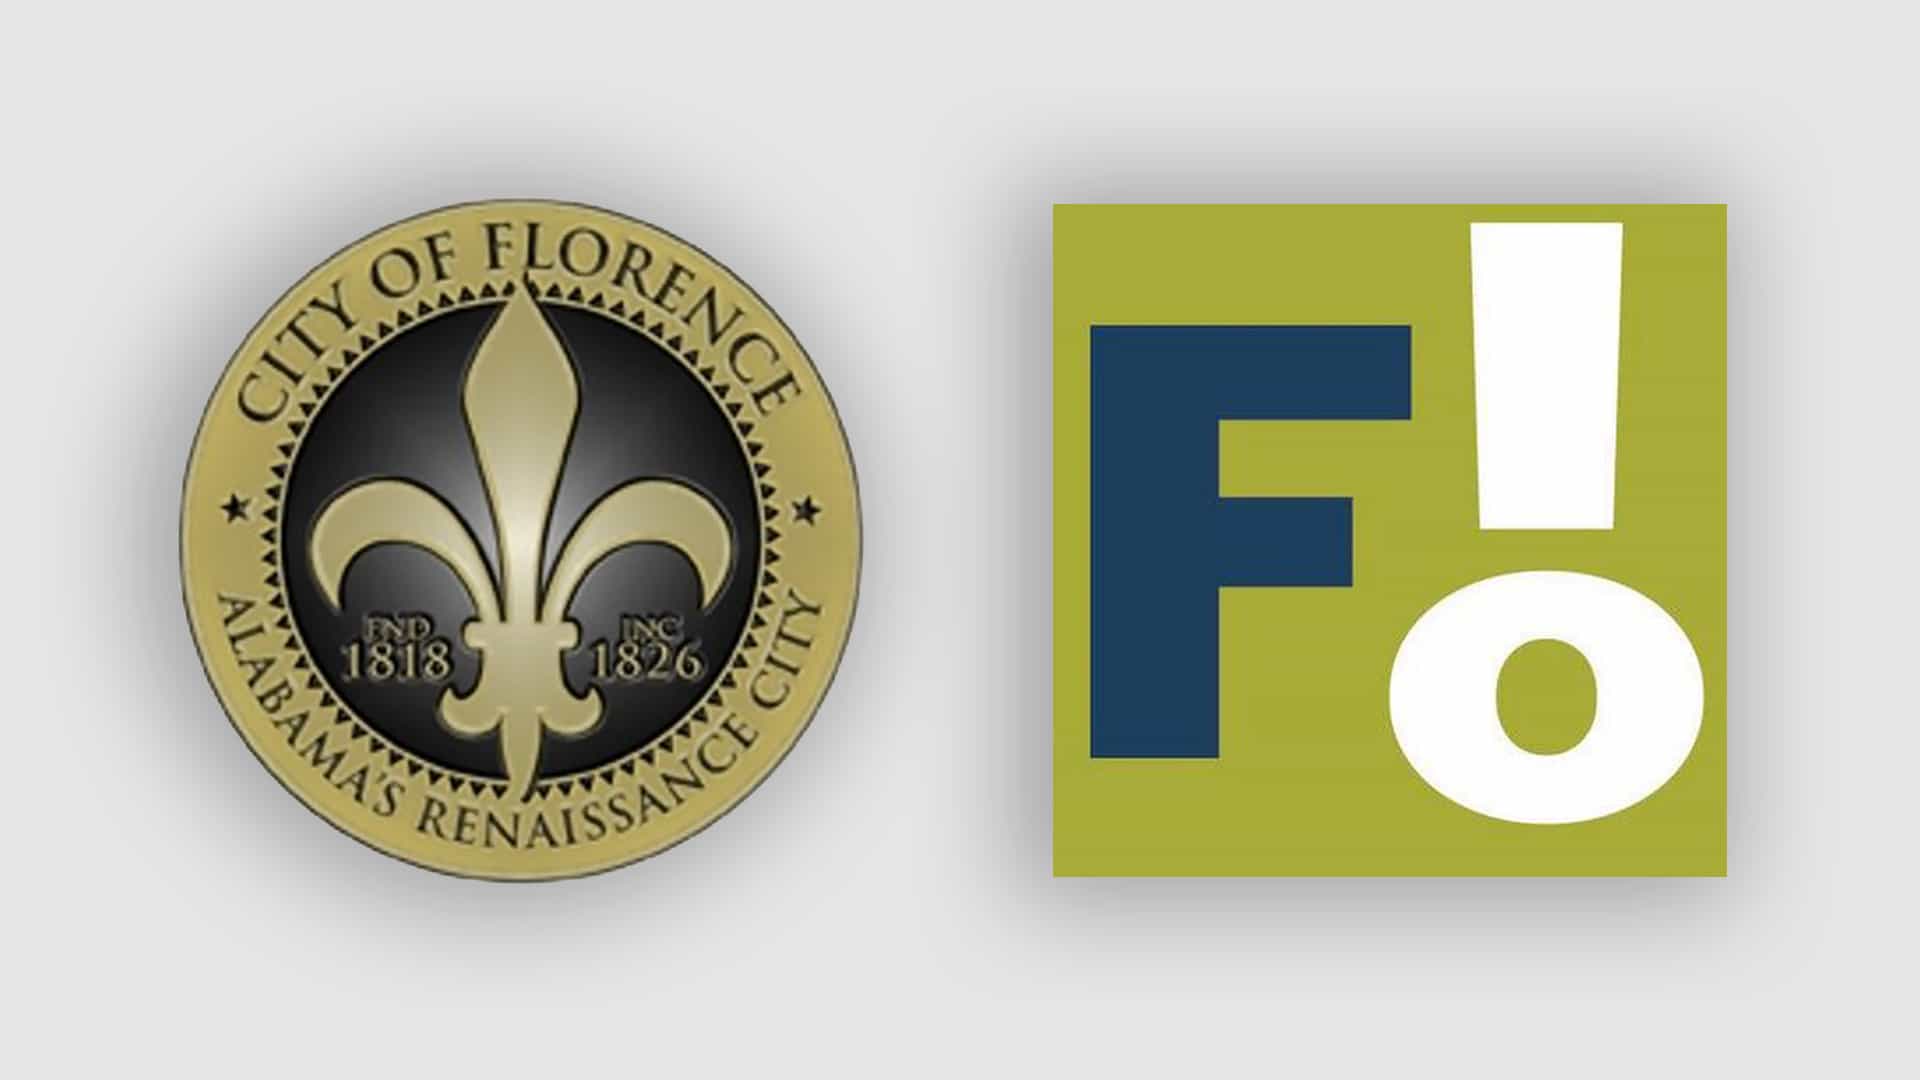 El nuevo y espantoso logotipo de la ciudad de Florencia obtiene una F en línea